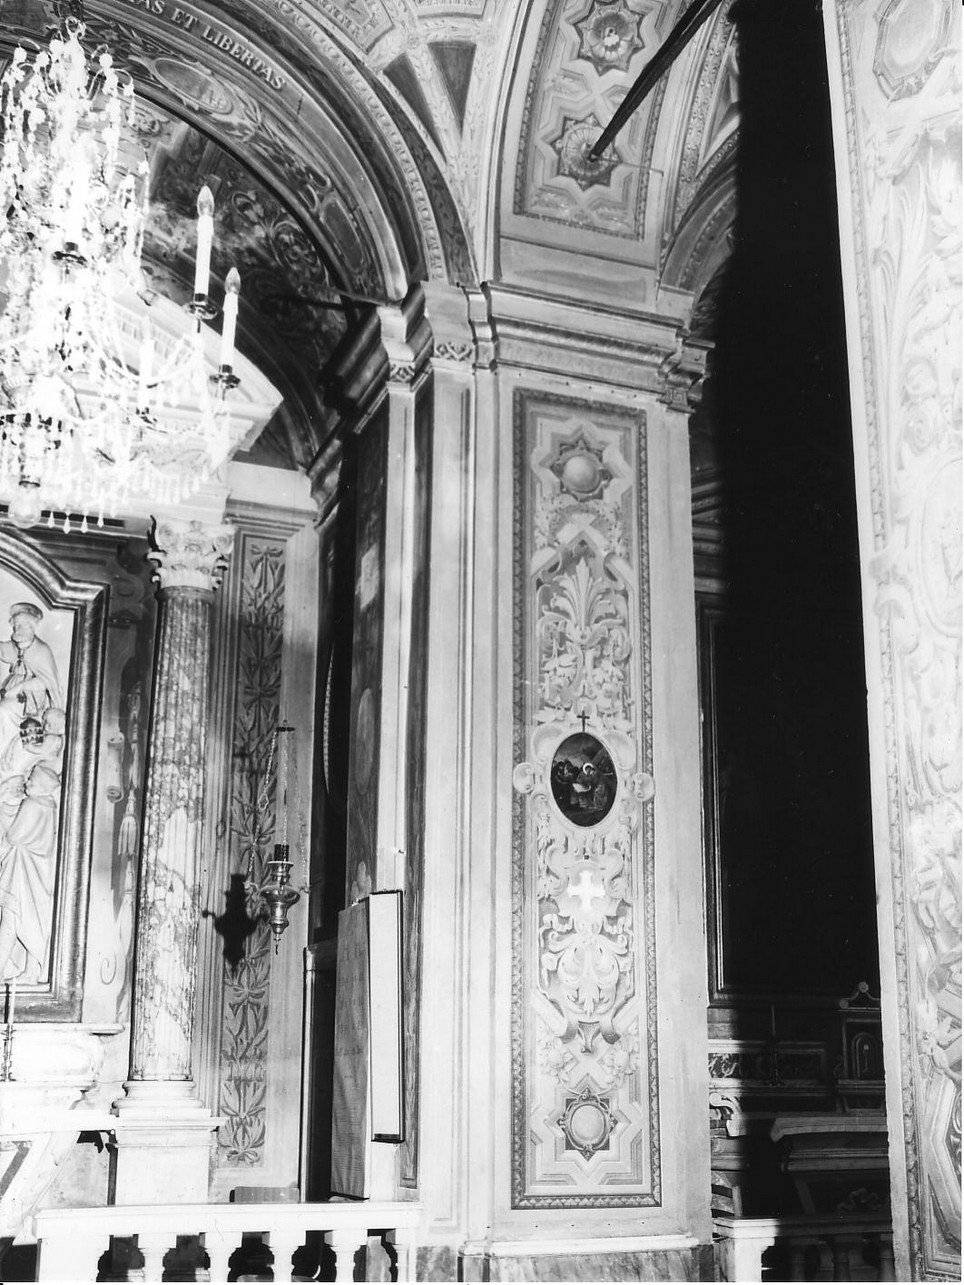 motivi decorativi astratti (parasta, opera isolata) di Buscaglia Domenico (sec. XIX)